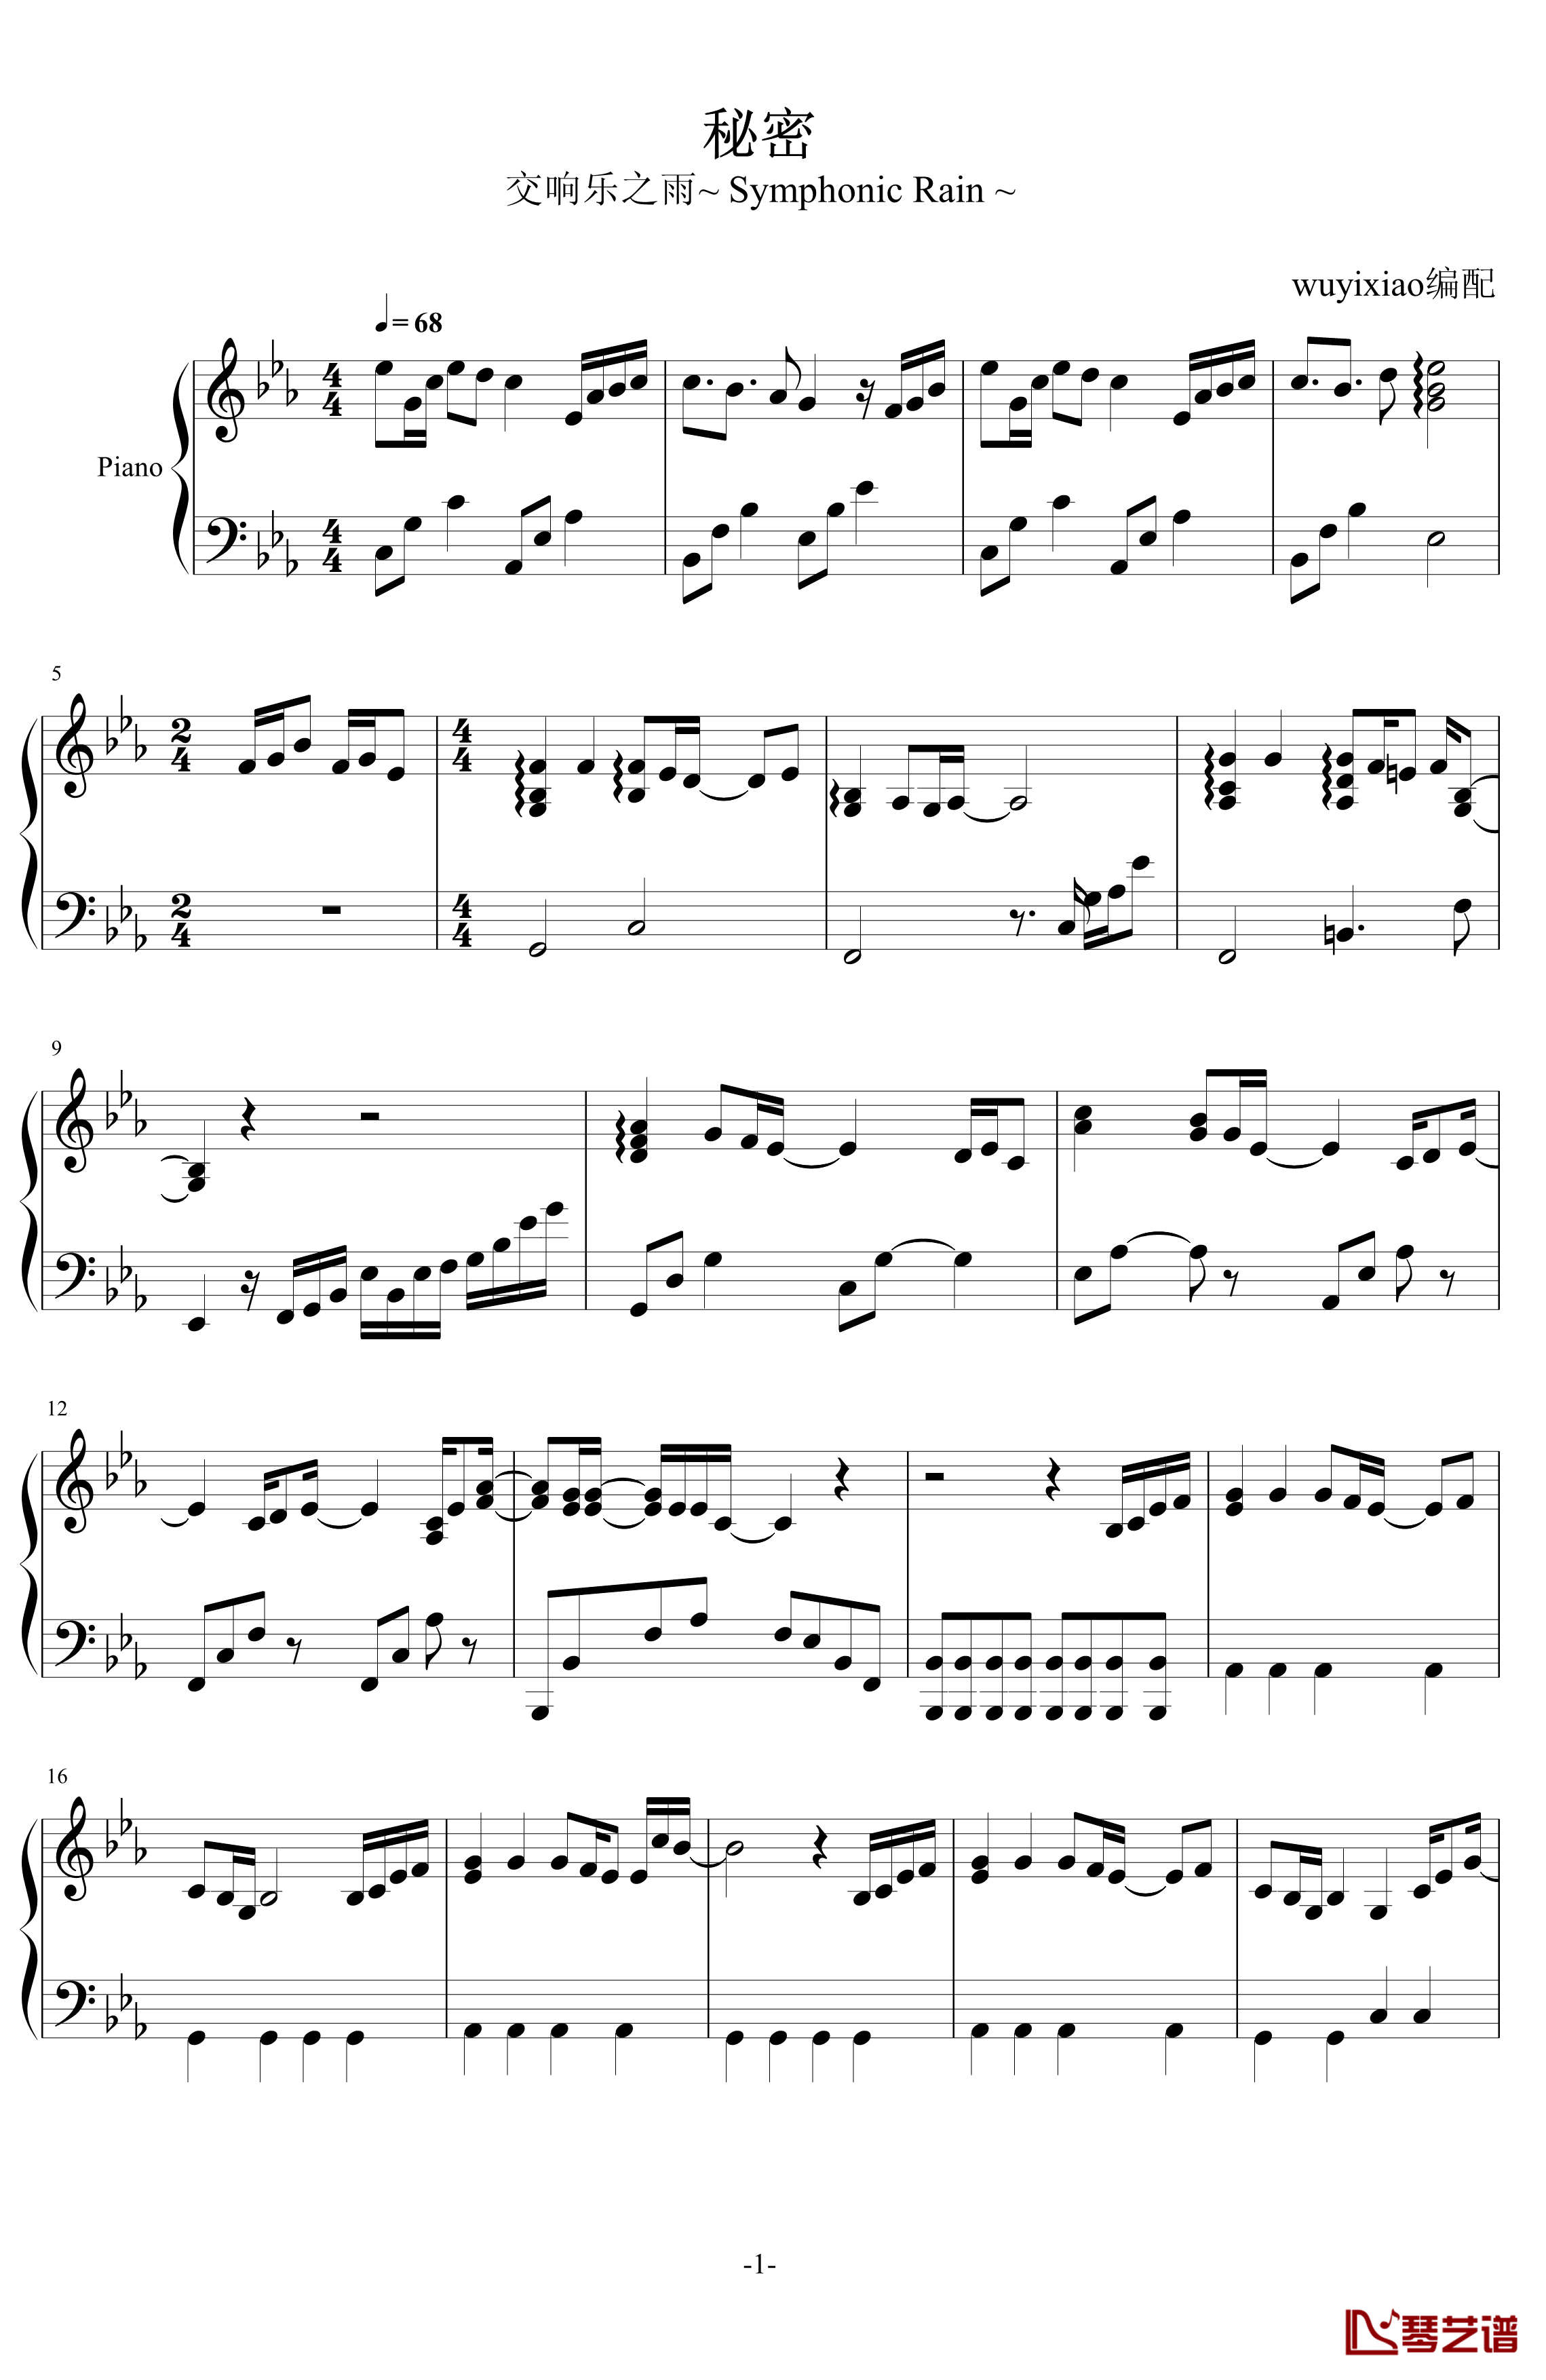 秘密钢琴谱-交响乐之雨1